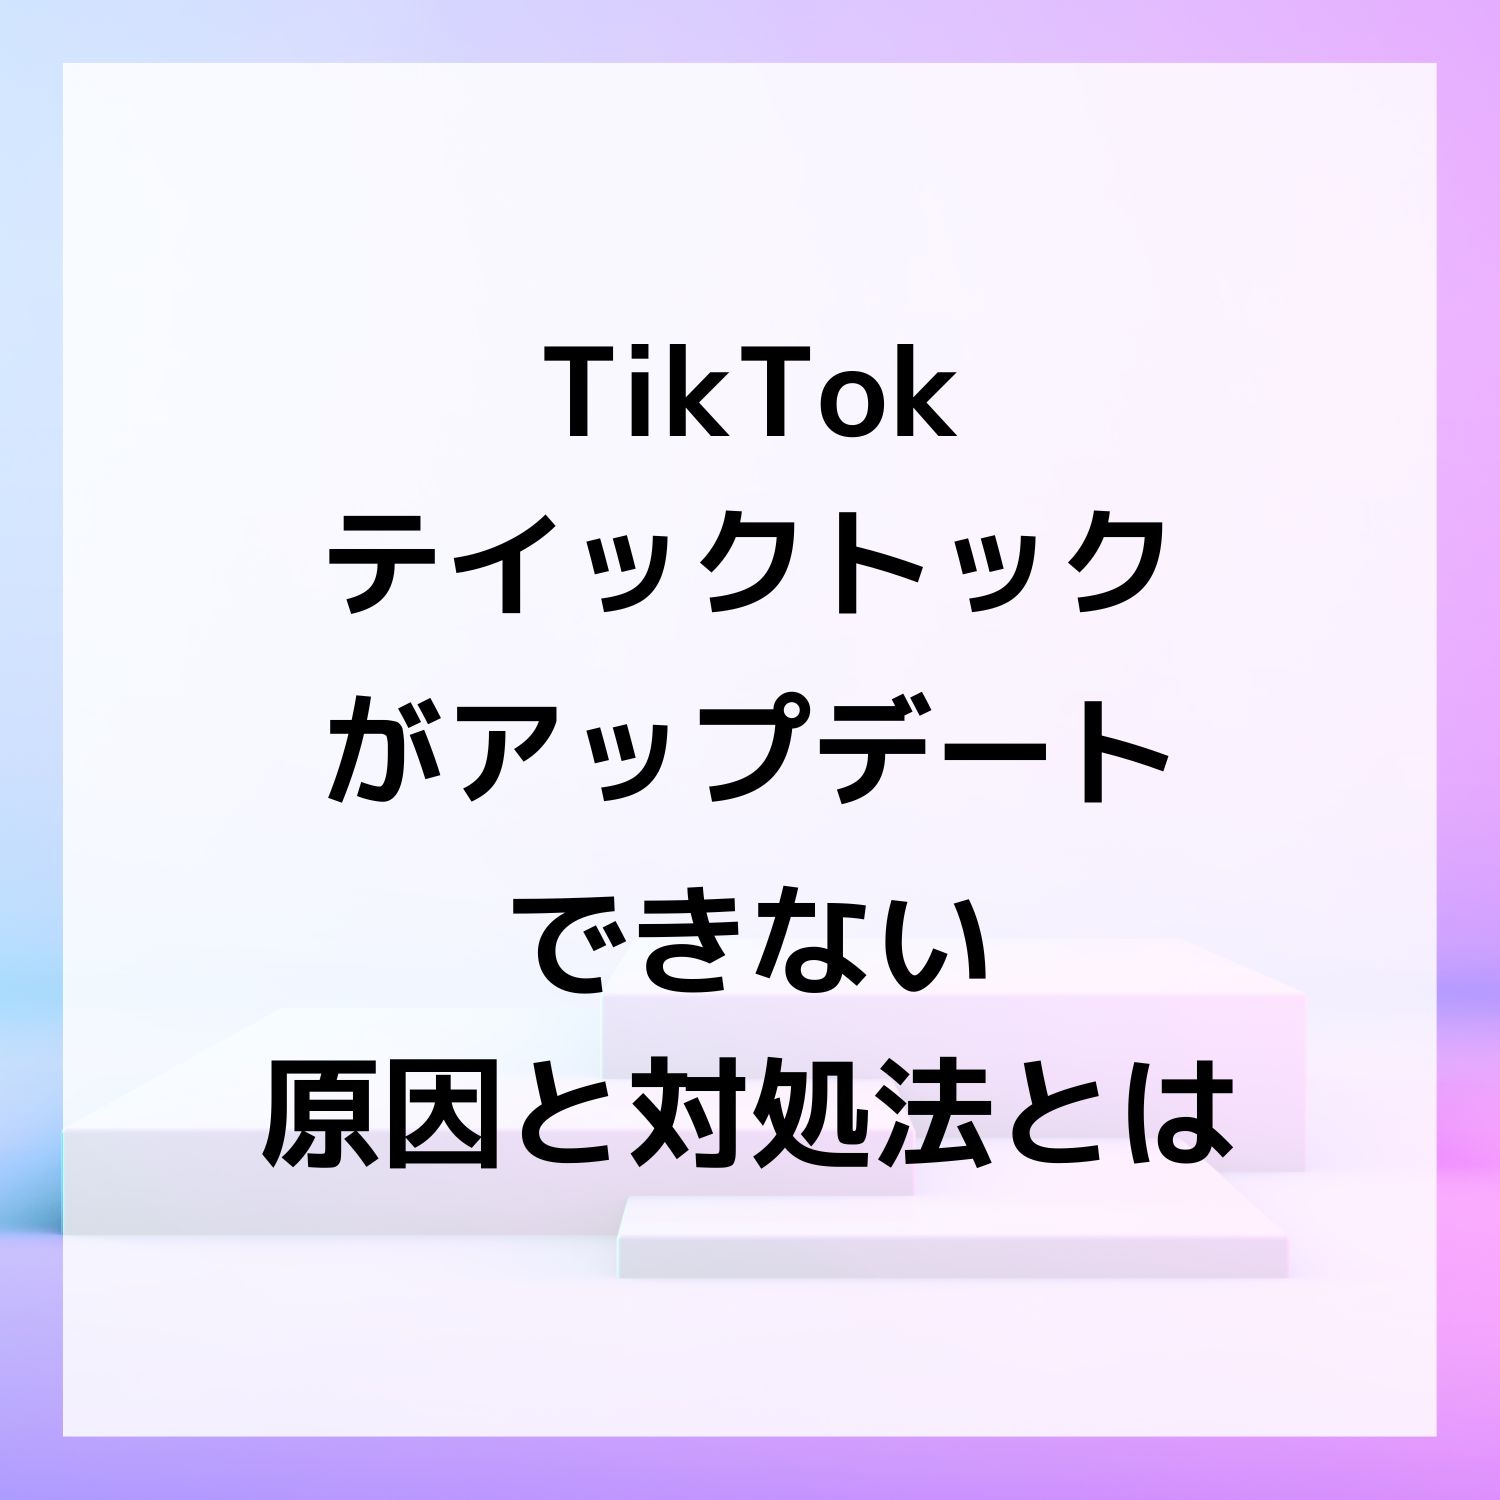 TikTok ティックトックがアップデートできない原因と対処法とは